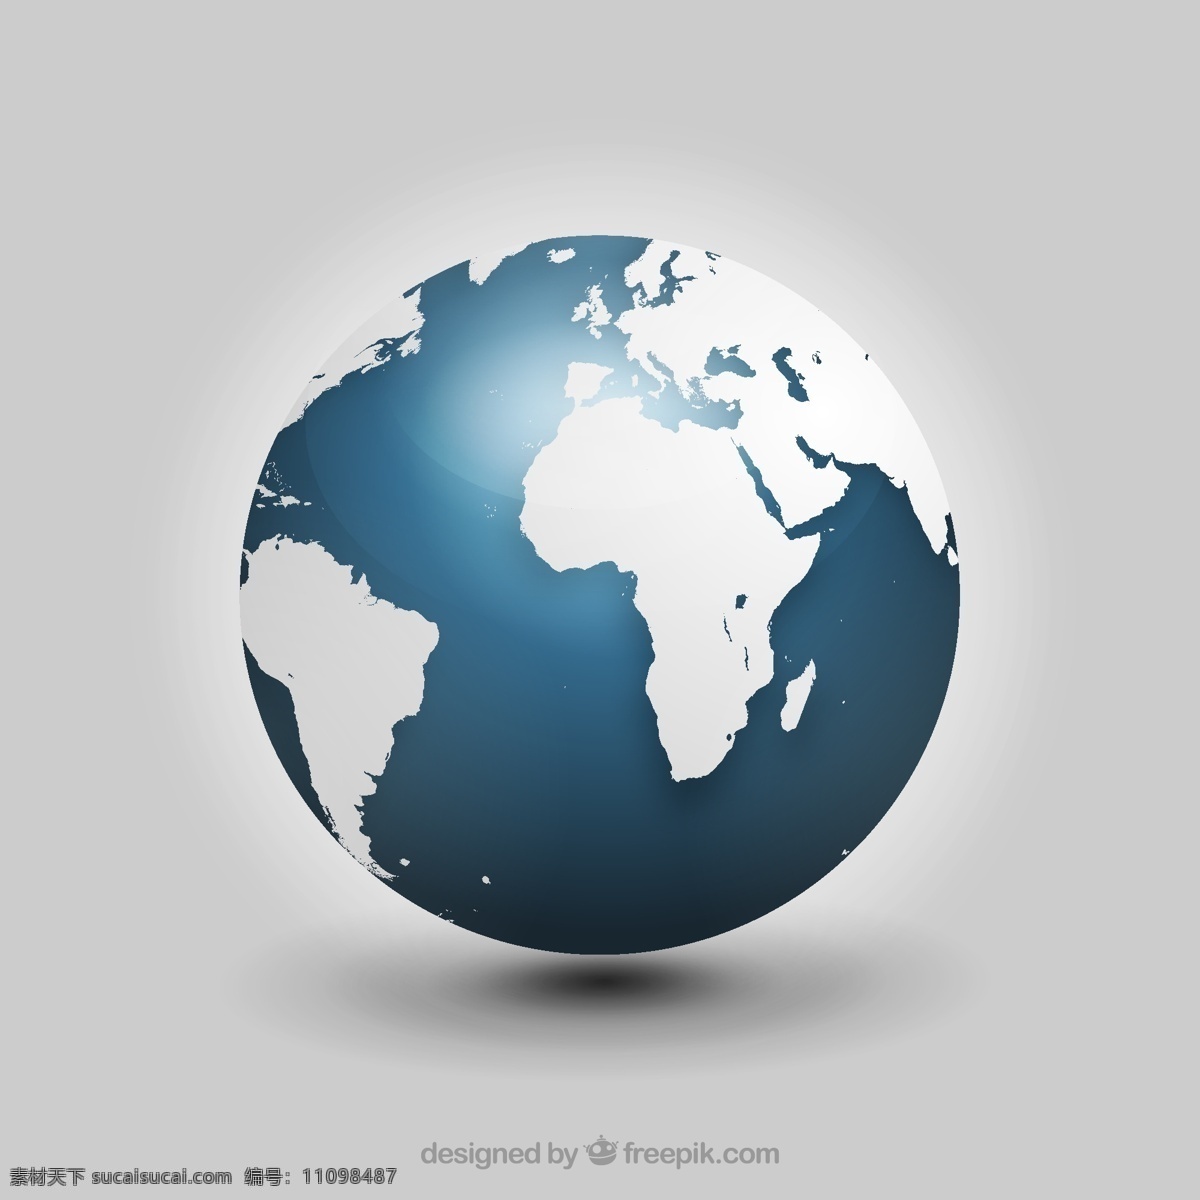 现实的世界 地图 世界 全球 世界地图 国际 现实 灰色